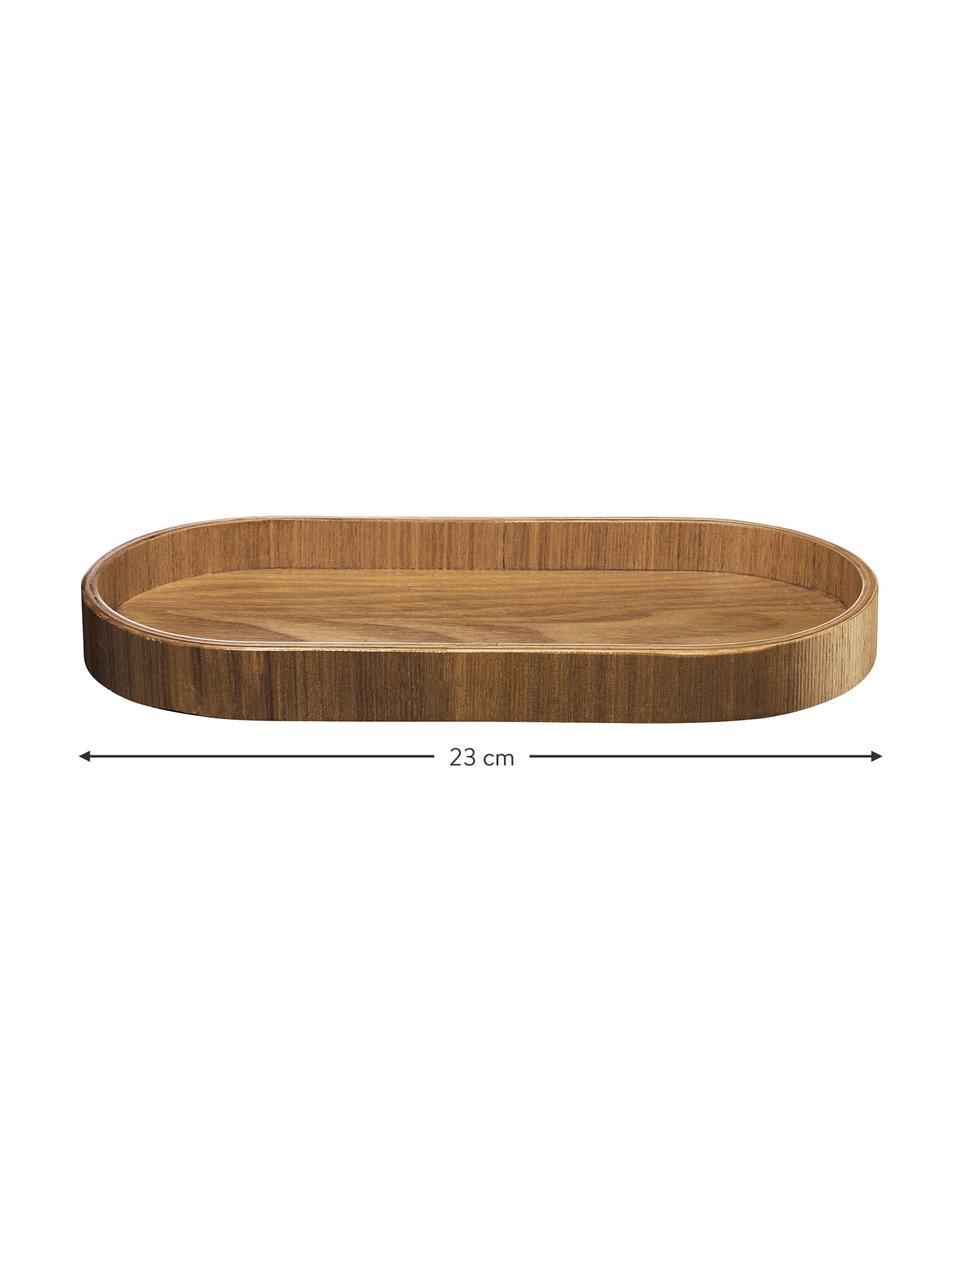 Weidenholz-Servierplatte Wood, verschiedene Größen, Weidenholz, Braun, L 23 x B 11 cm